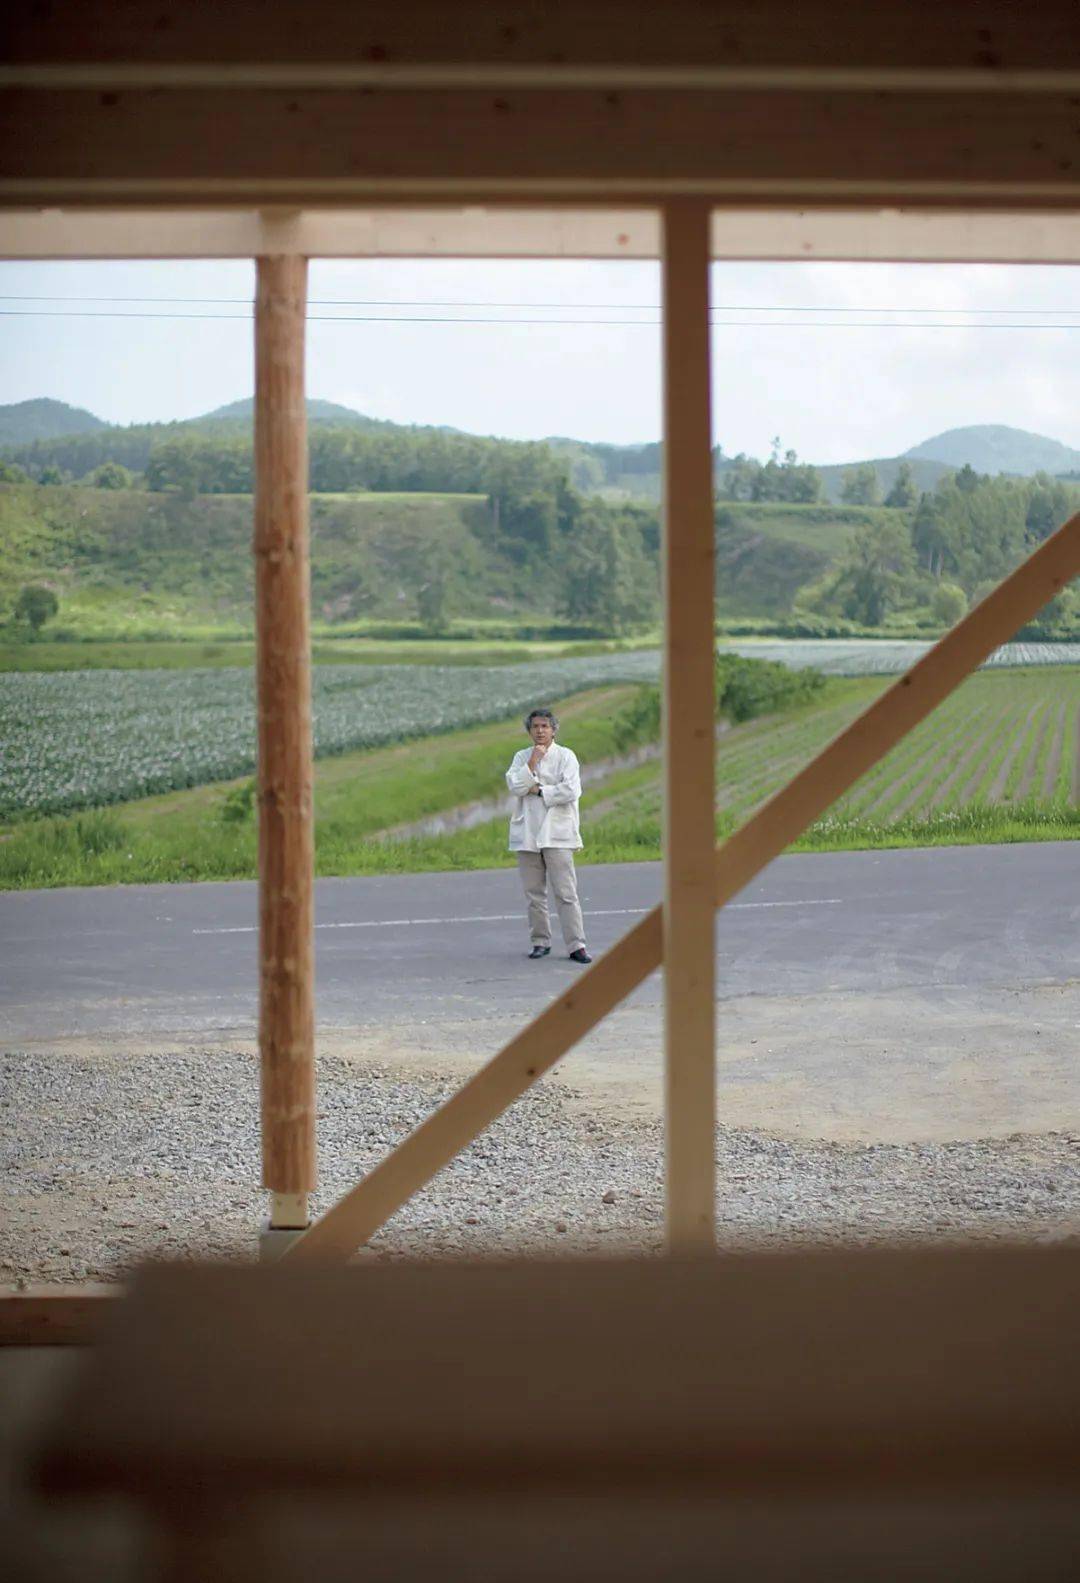 日本建筑师中村好文新作面世 栖身之所是 房子 容纳起生活才是 家 住宅